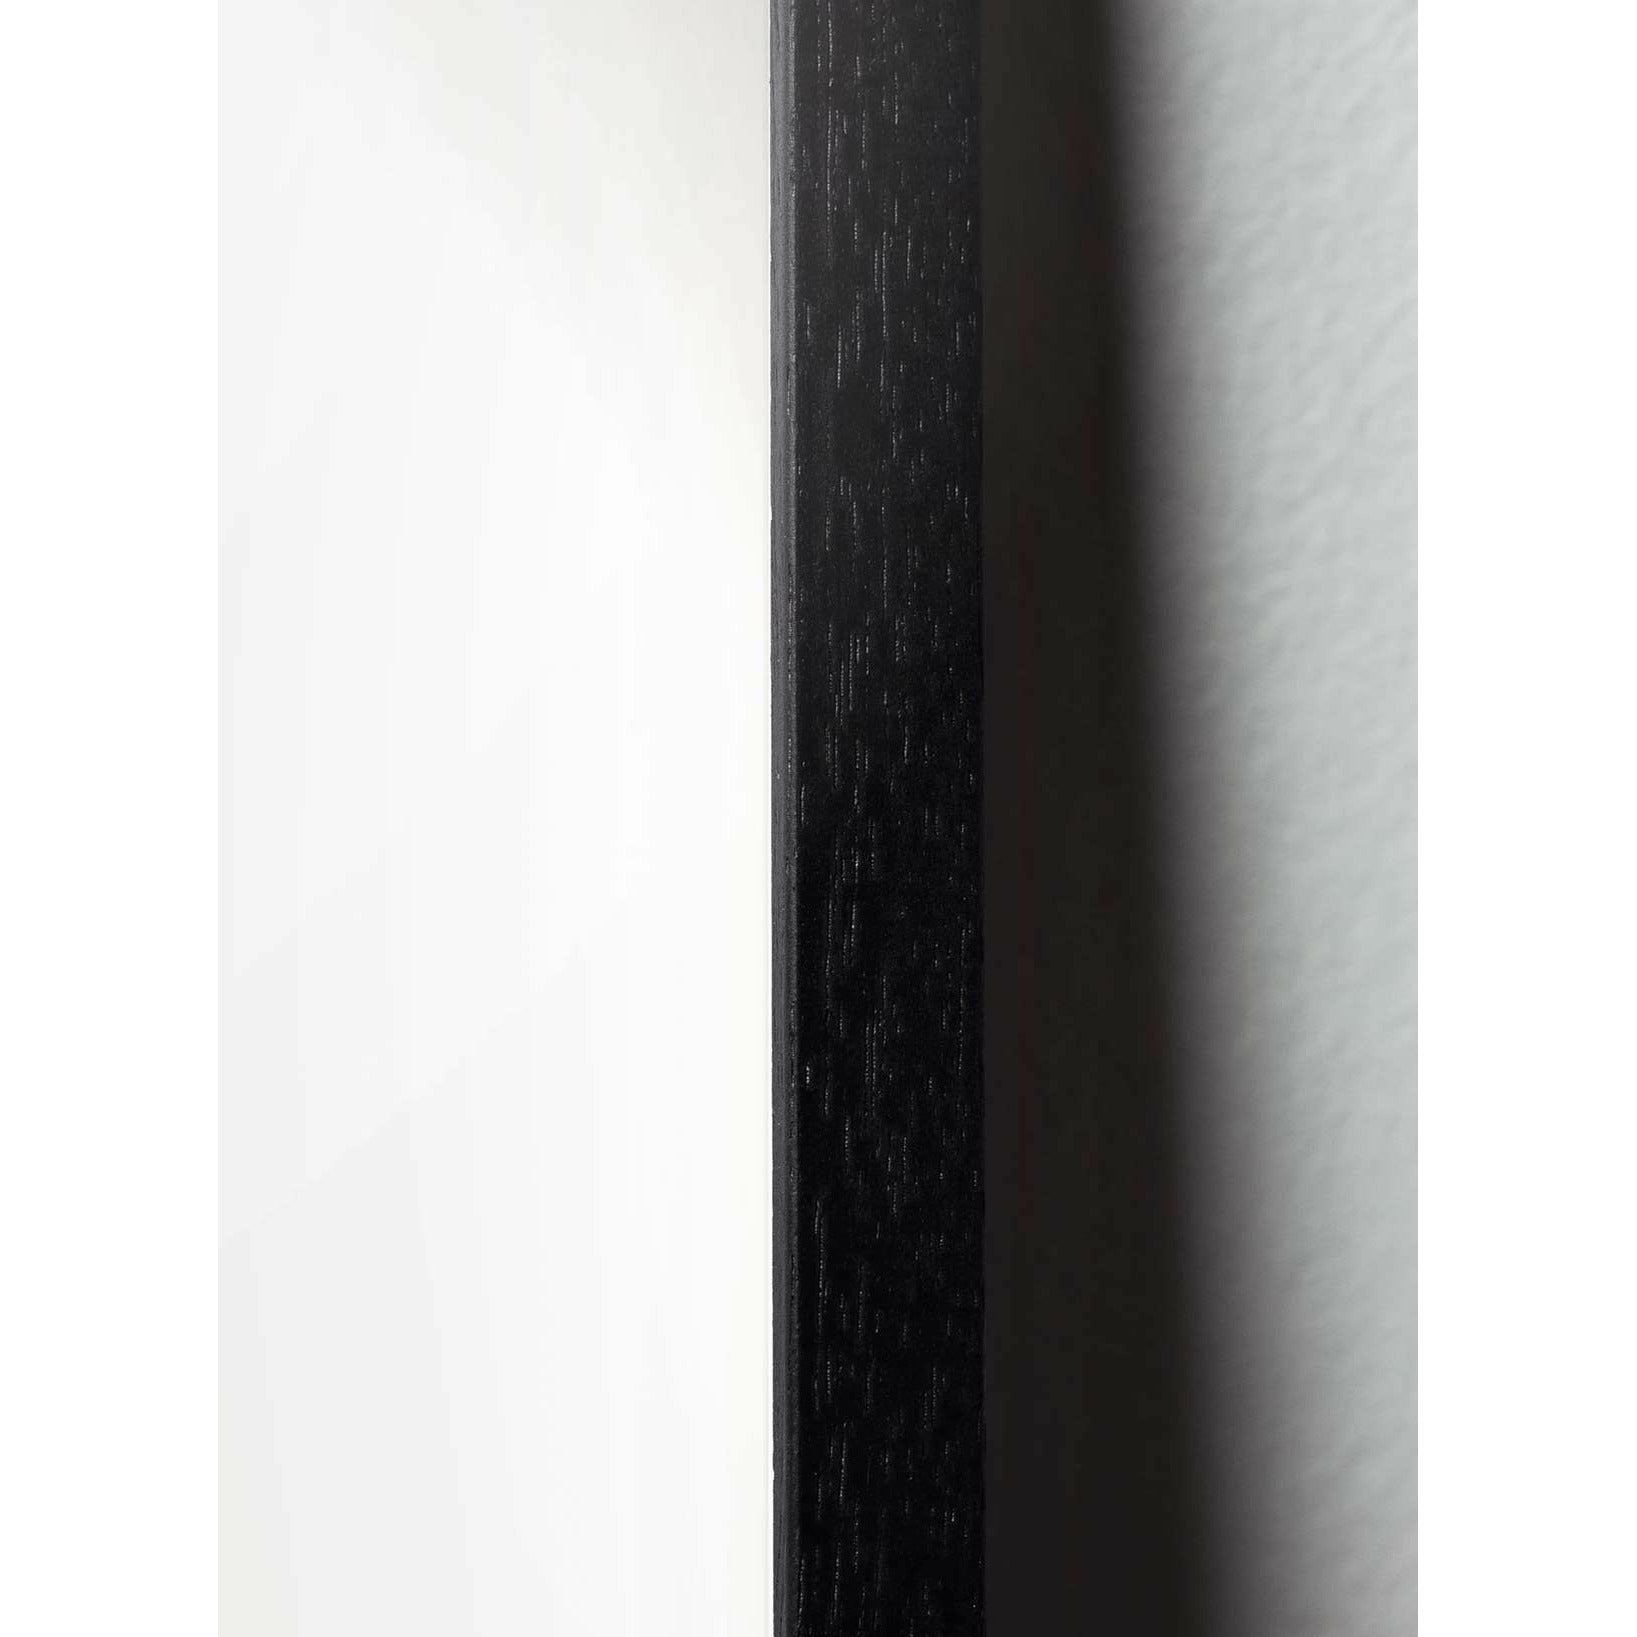 Poster classico di cono di pino da un'idea, cornice in legno laccato nero A5, sfondo bianco